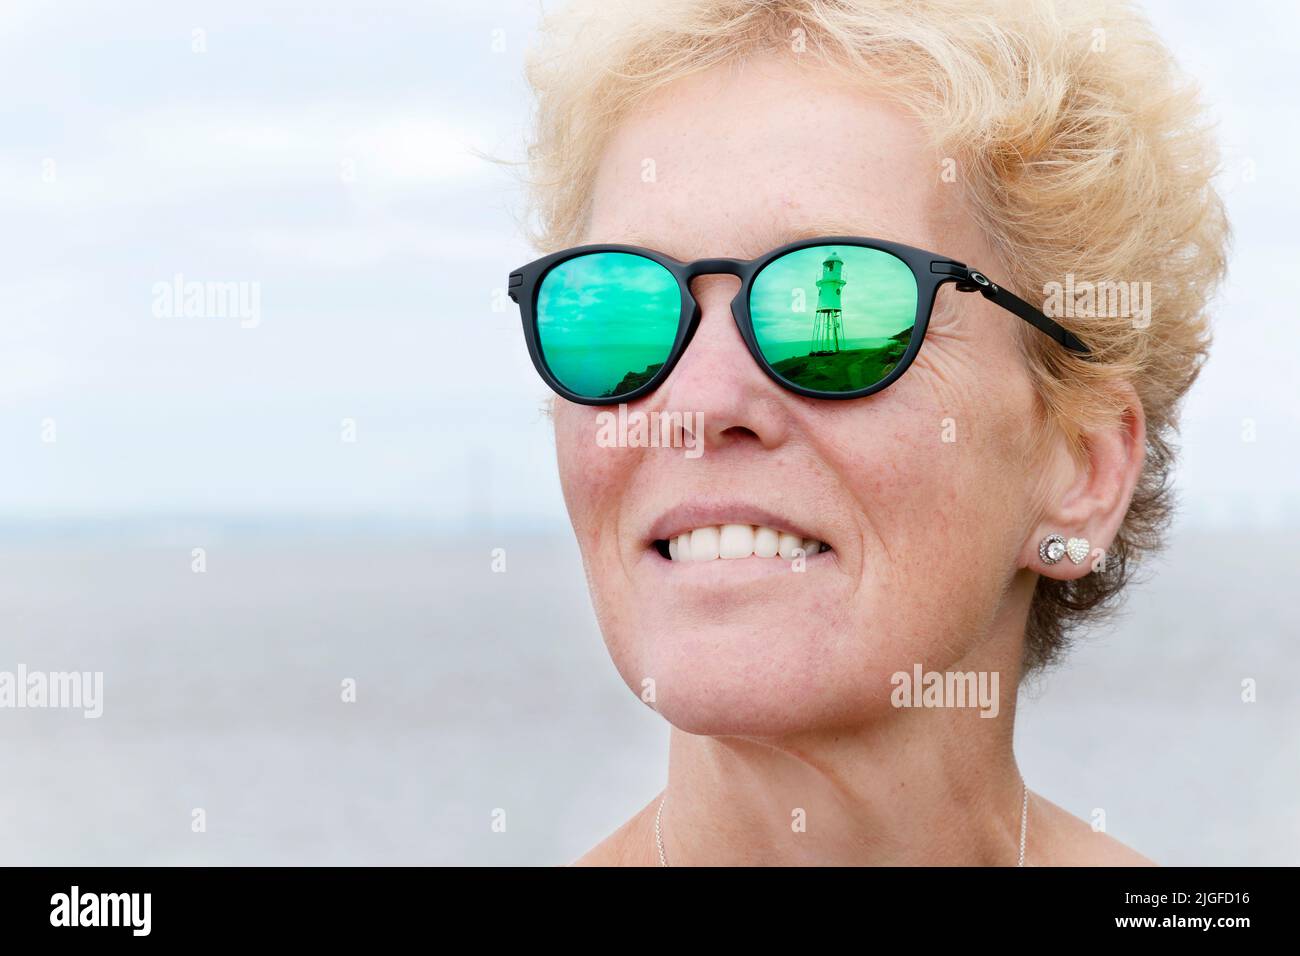 Una visione del faro di Black Nore, Portishead, Regno Unito, si riflette negli occhiali da sole da donna su prescrizione medica. Le lenti sono montate in un telaio Oakley Pitchman R. Foto Stock